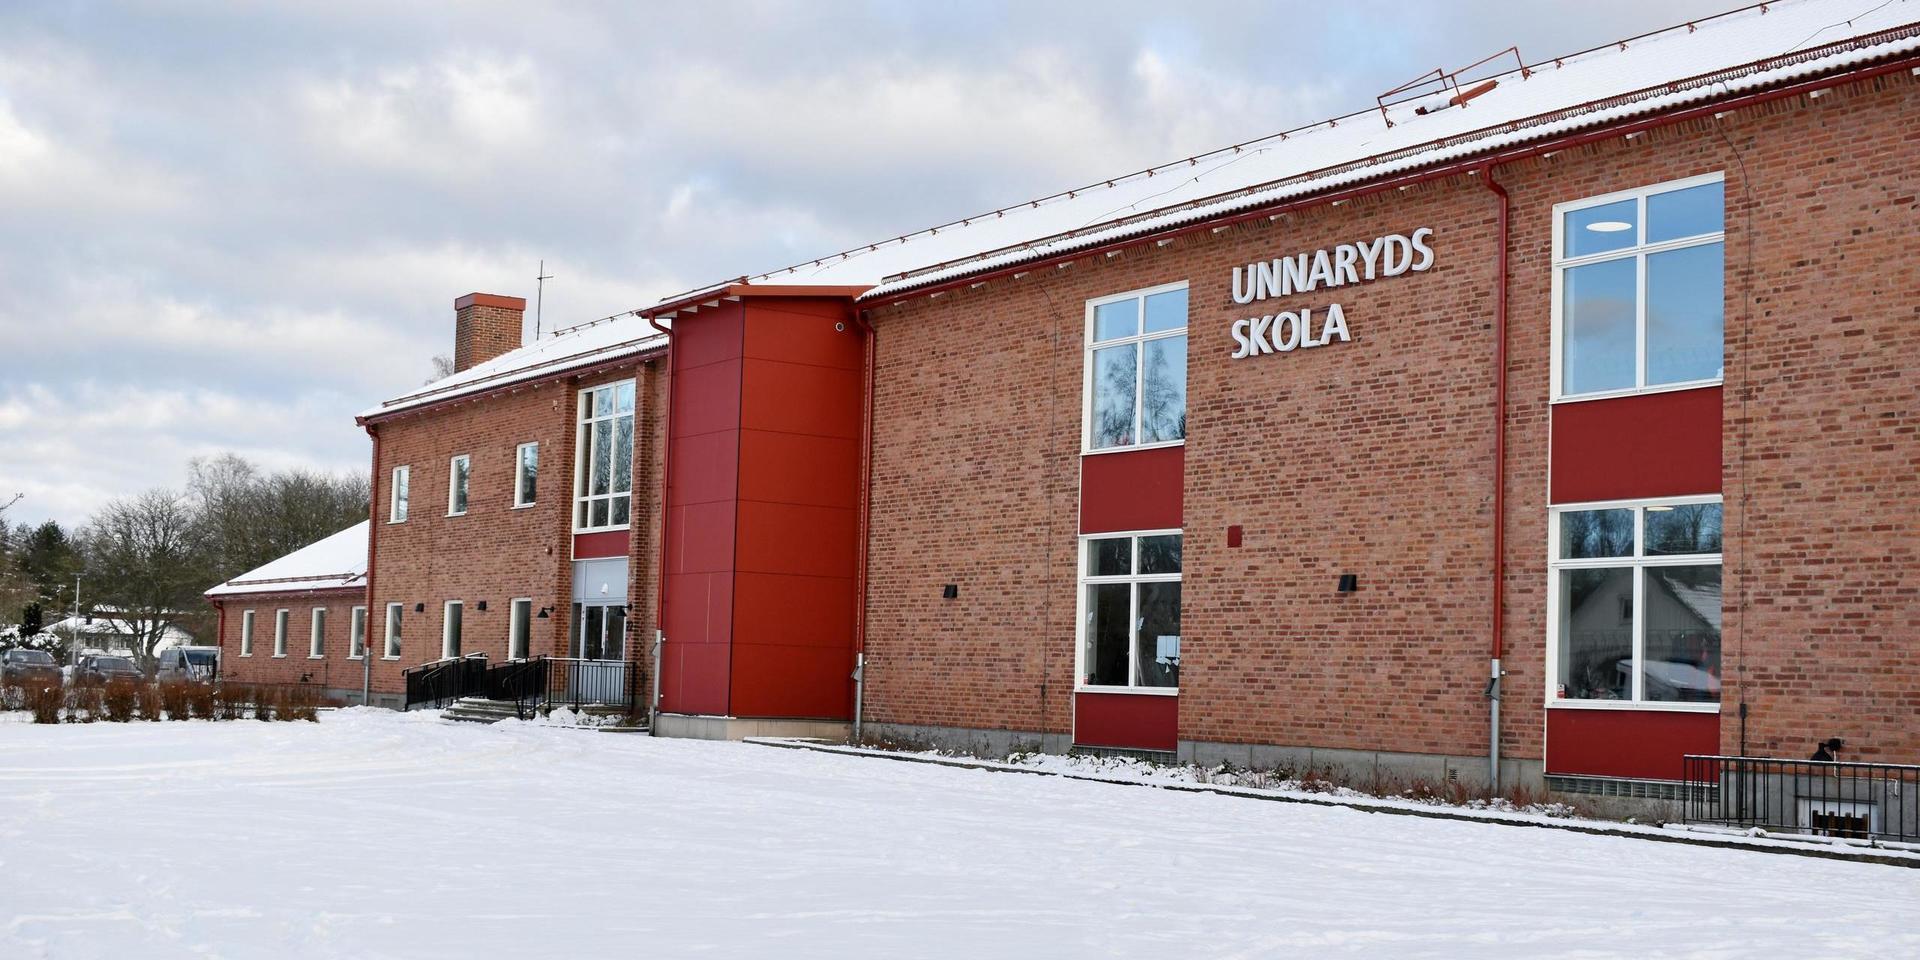 Snön ligger vit utanför Unnaryds skola. Eleverna är tillbaka i klassrummet och coronaläget sägs vara under kontroll.